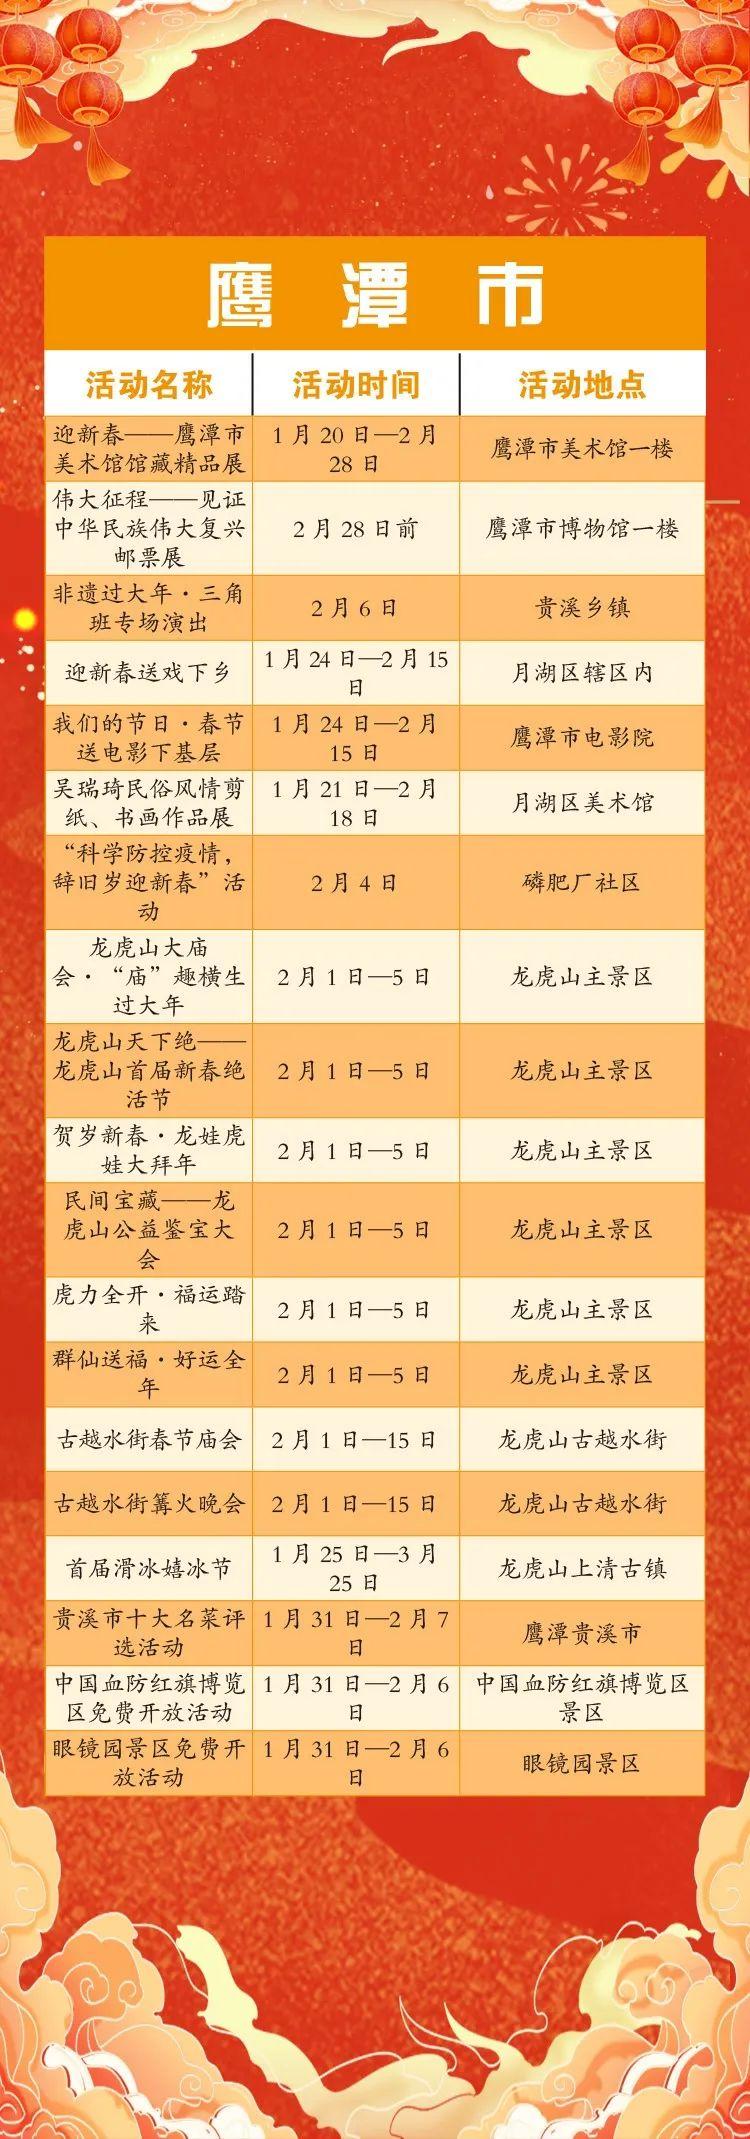 2022江西春节假期景区免门票活动详解